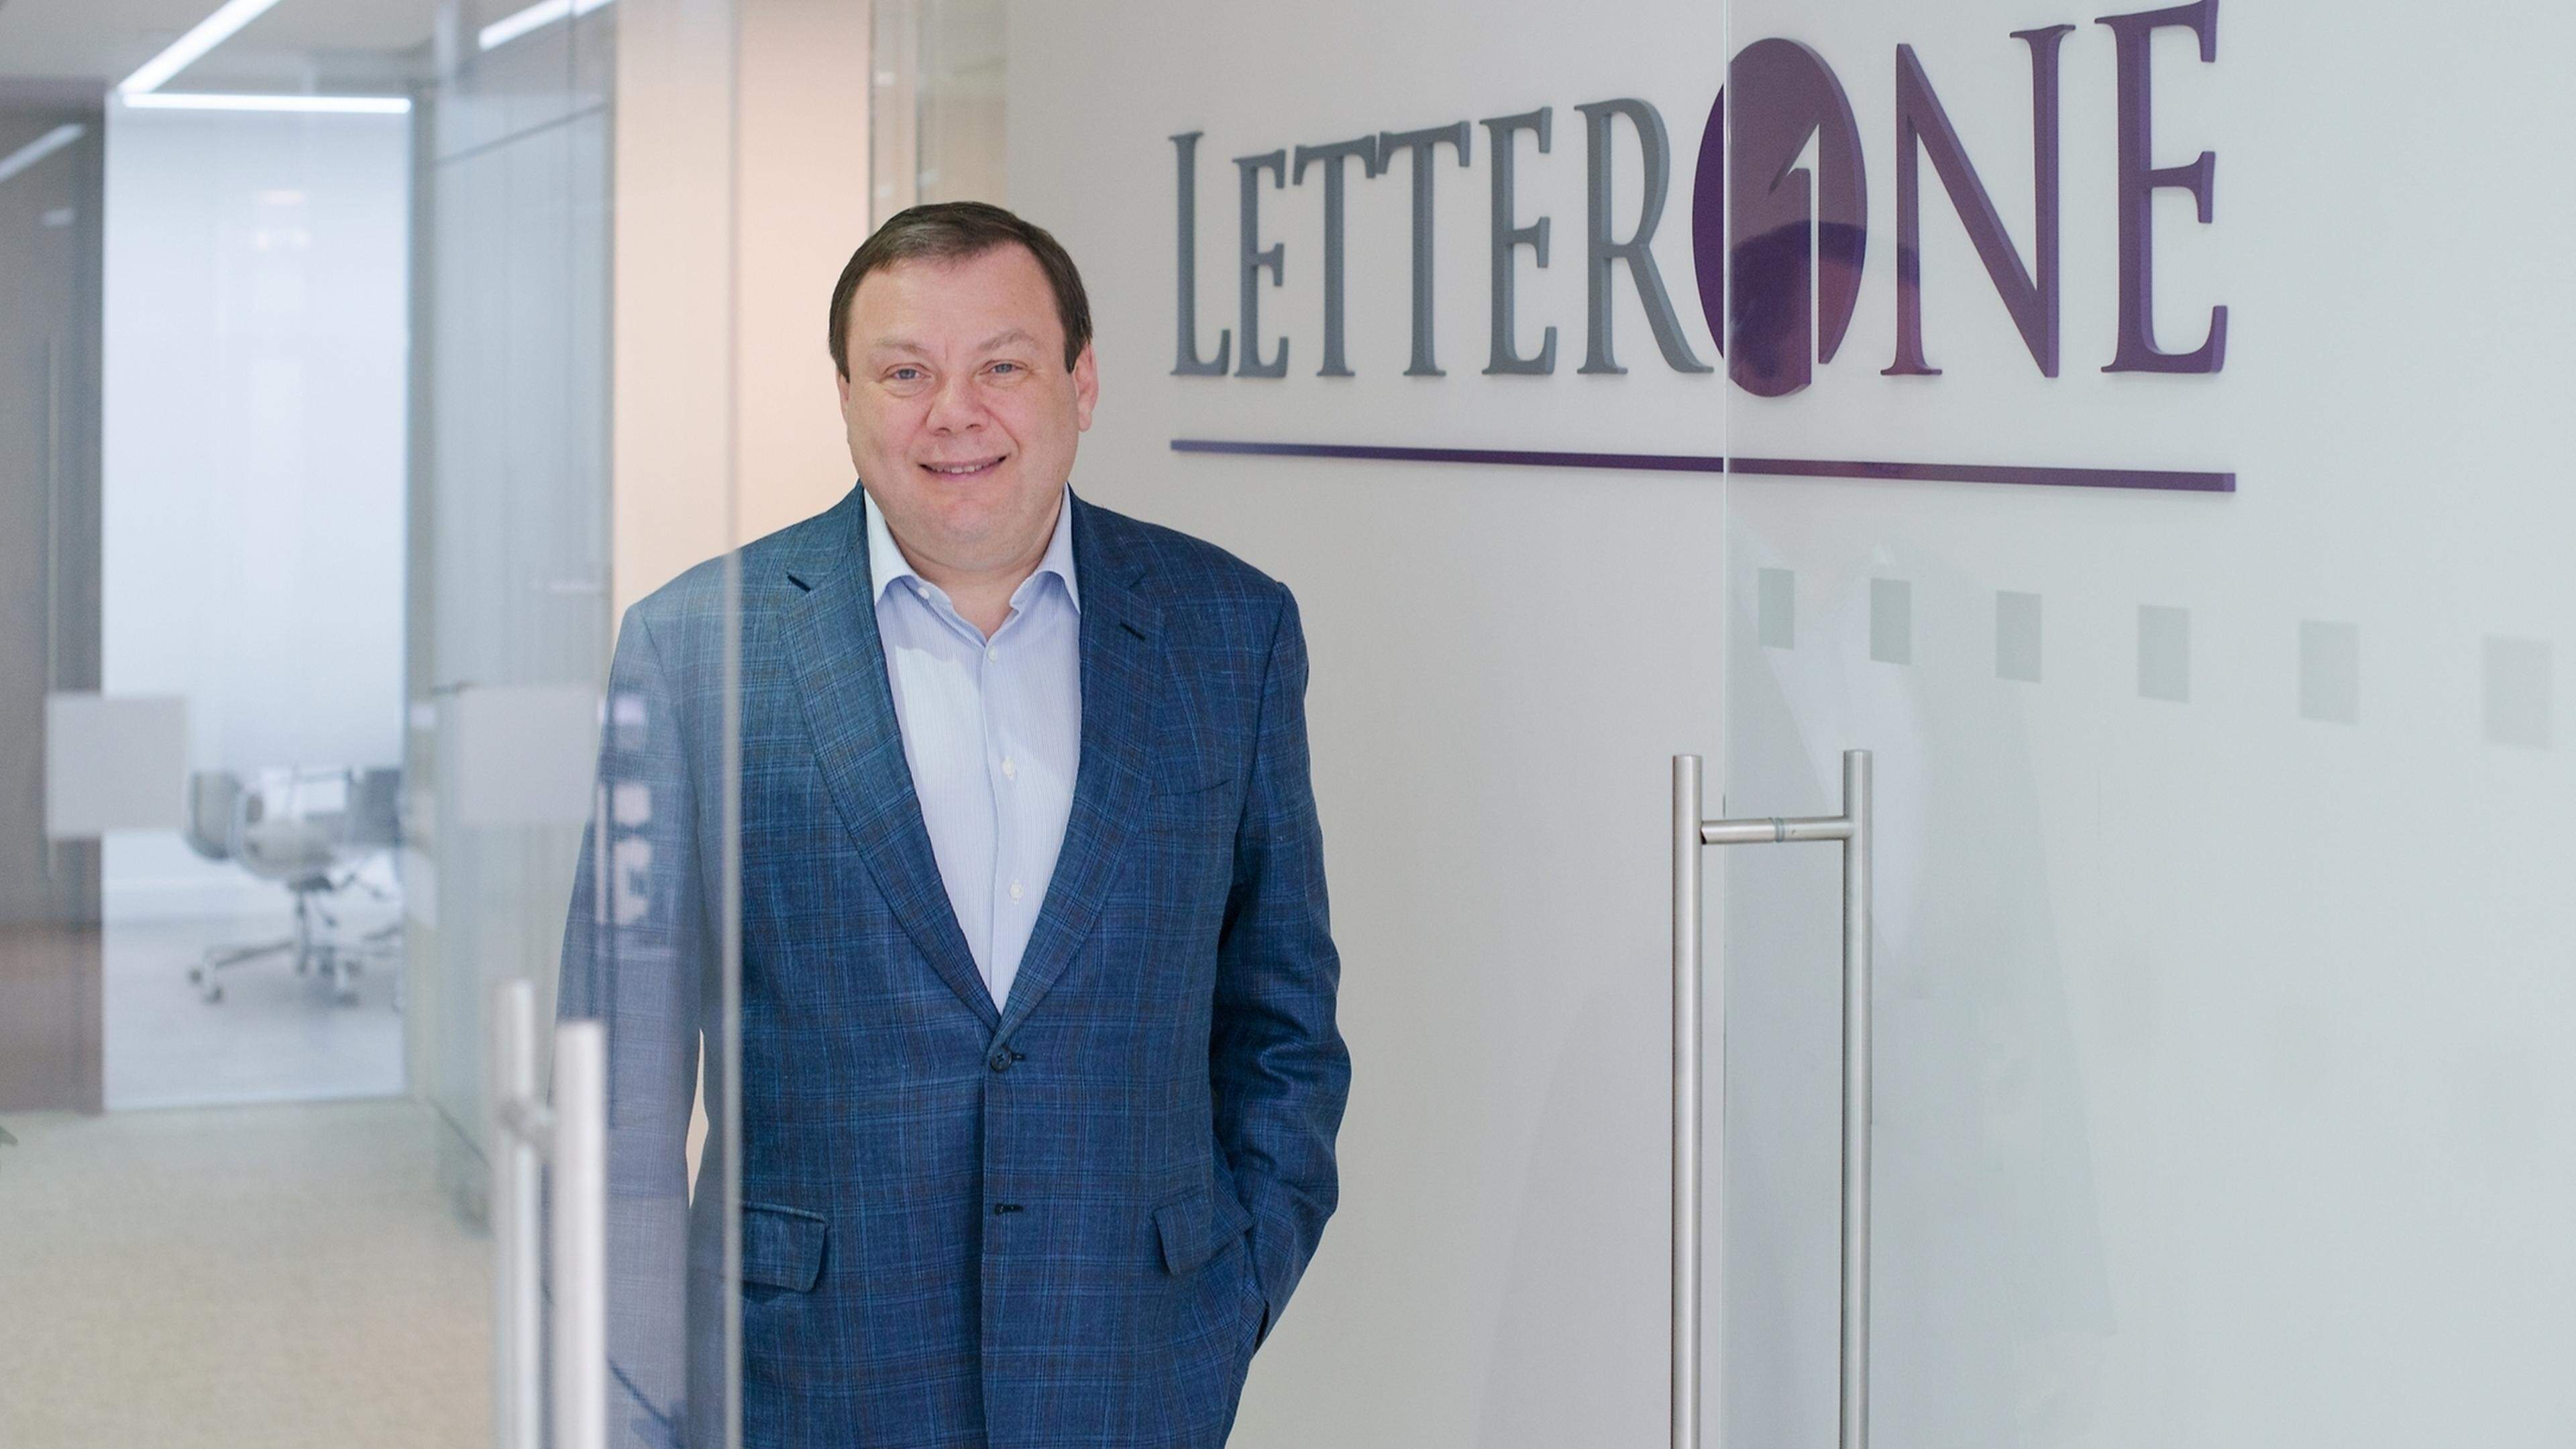  In Luxemburg gründete Michail Fridman mit Pjotr Awen die Firma LetterOne. Nach dem russischen Einmarsch in der Ukraine traten sie aus dem Vorstand zurück.